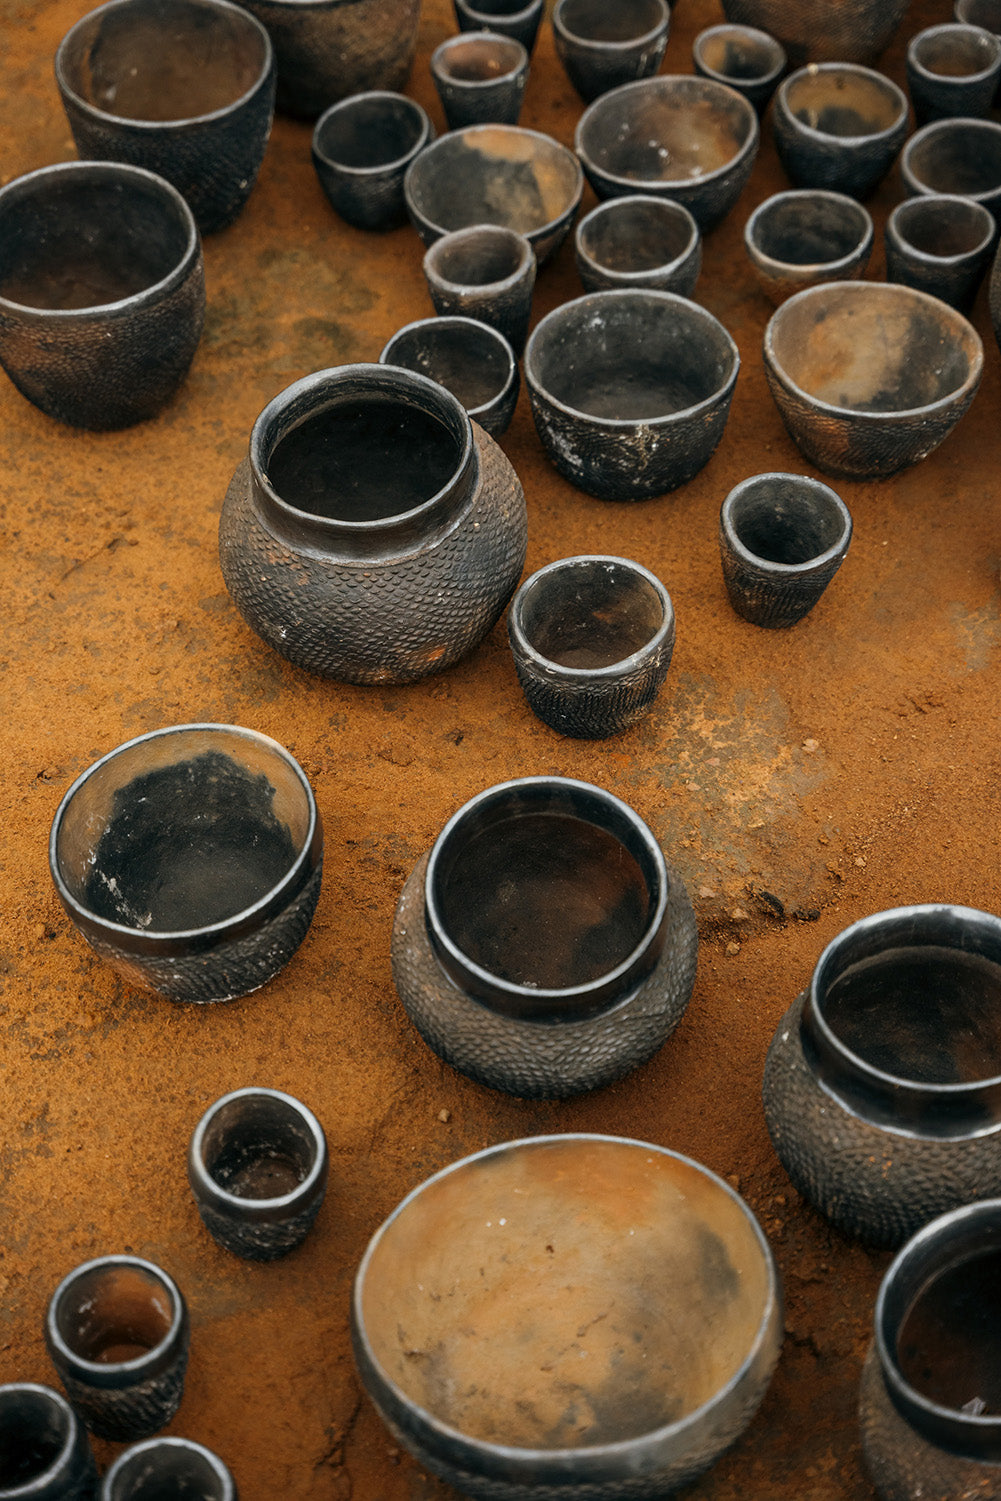 Akiliba pottery